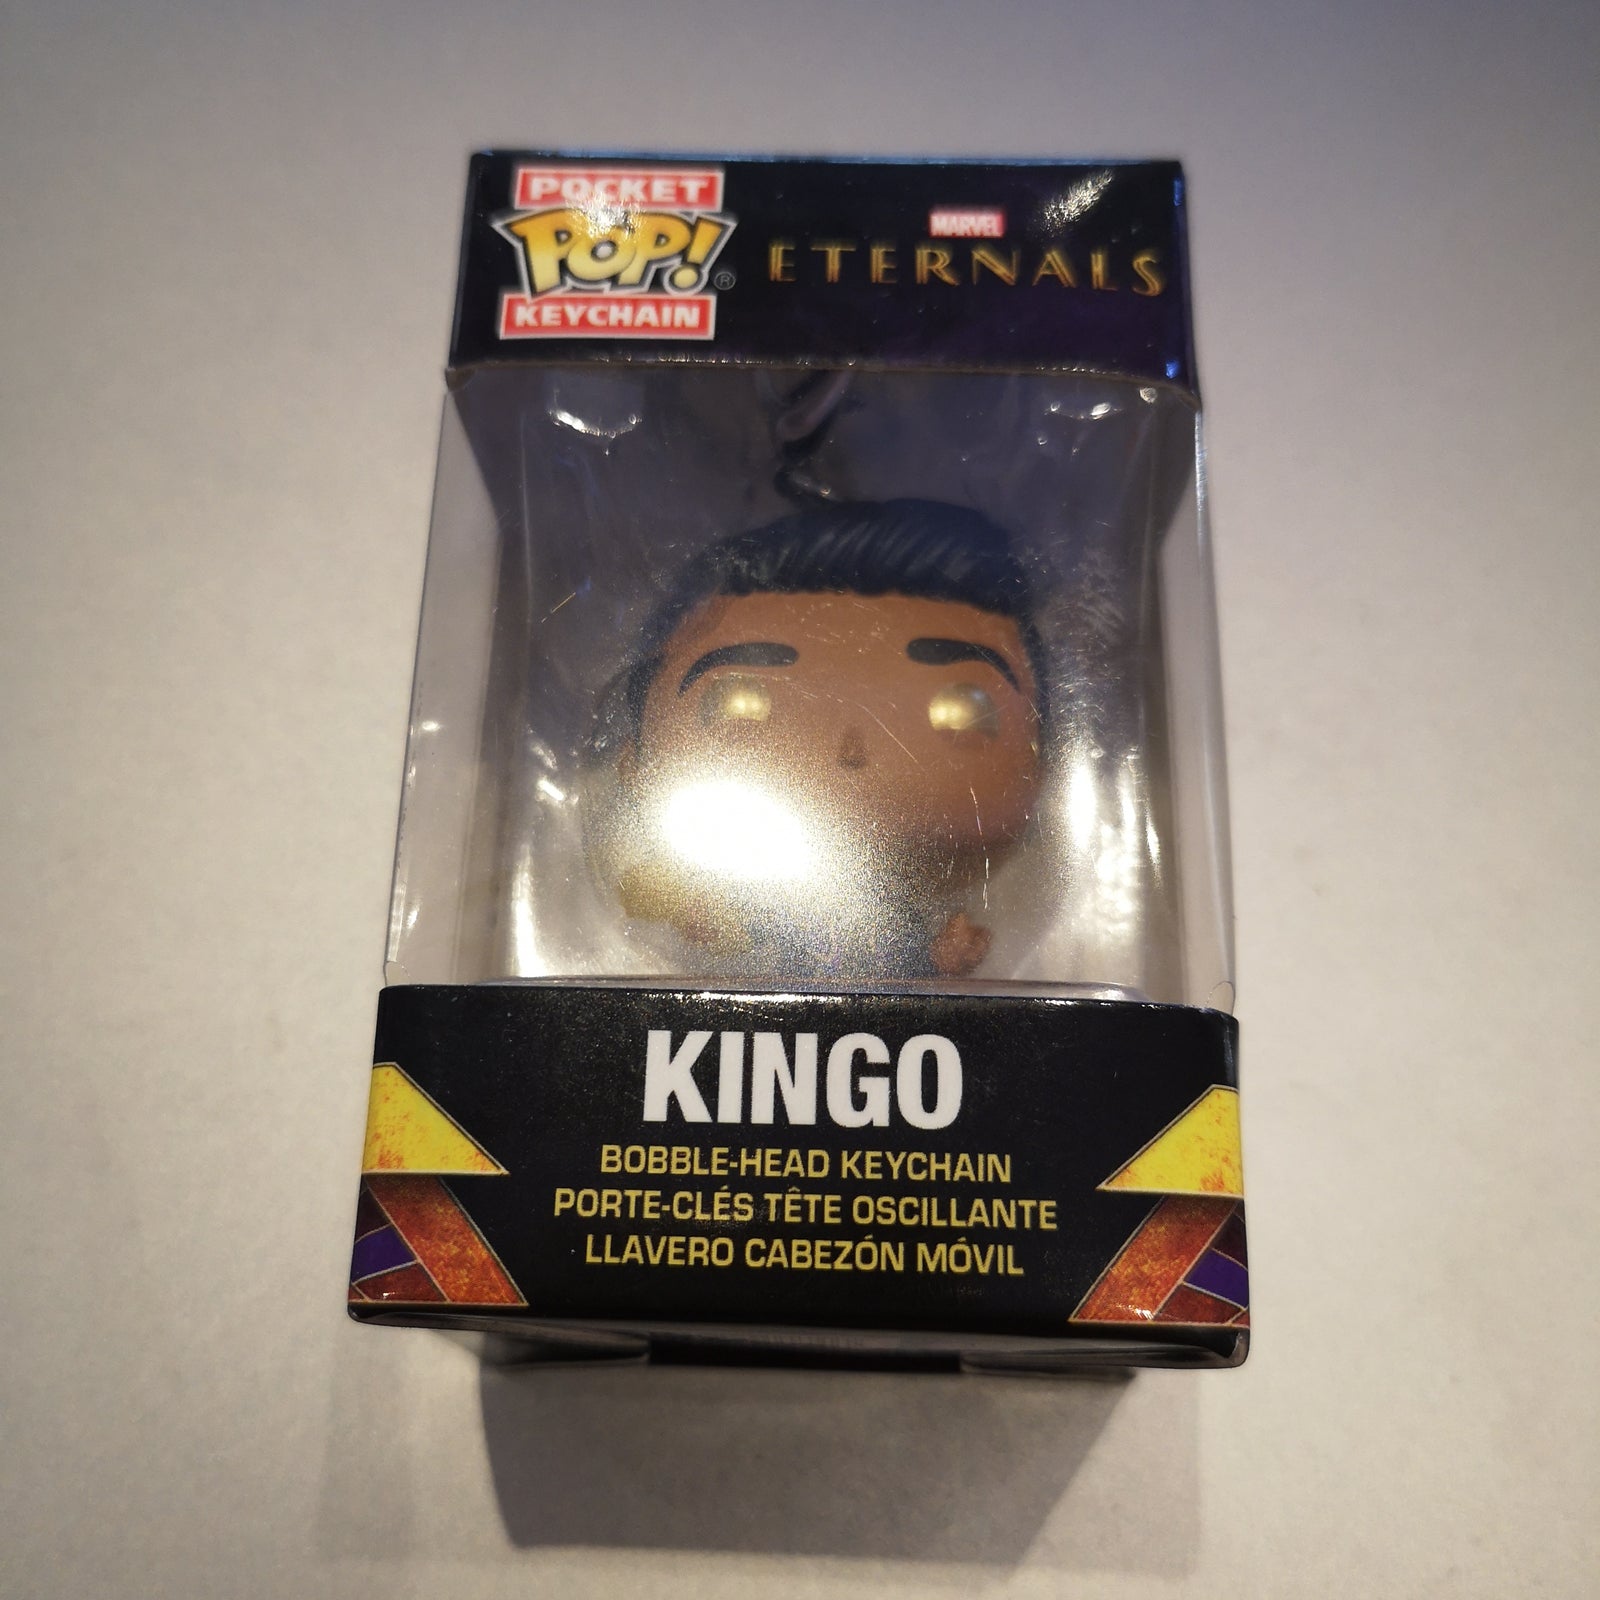 Kingo - Eternals Pocket Funko POP! Keychain by Funko